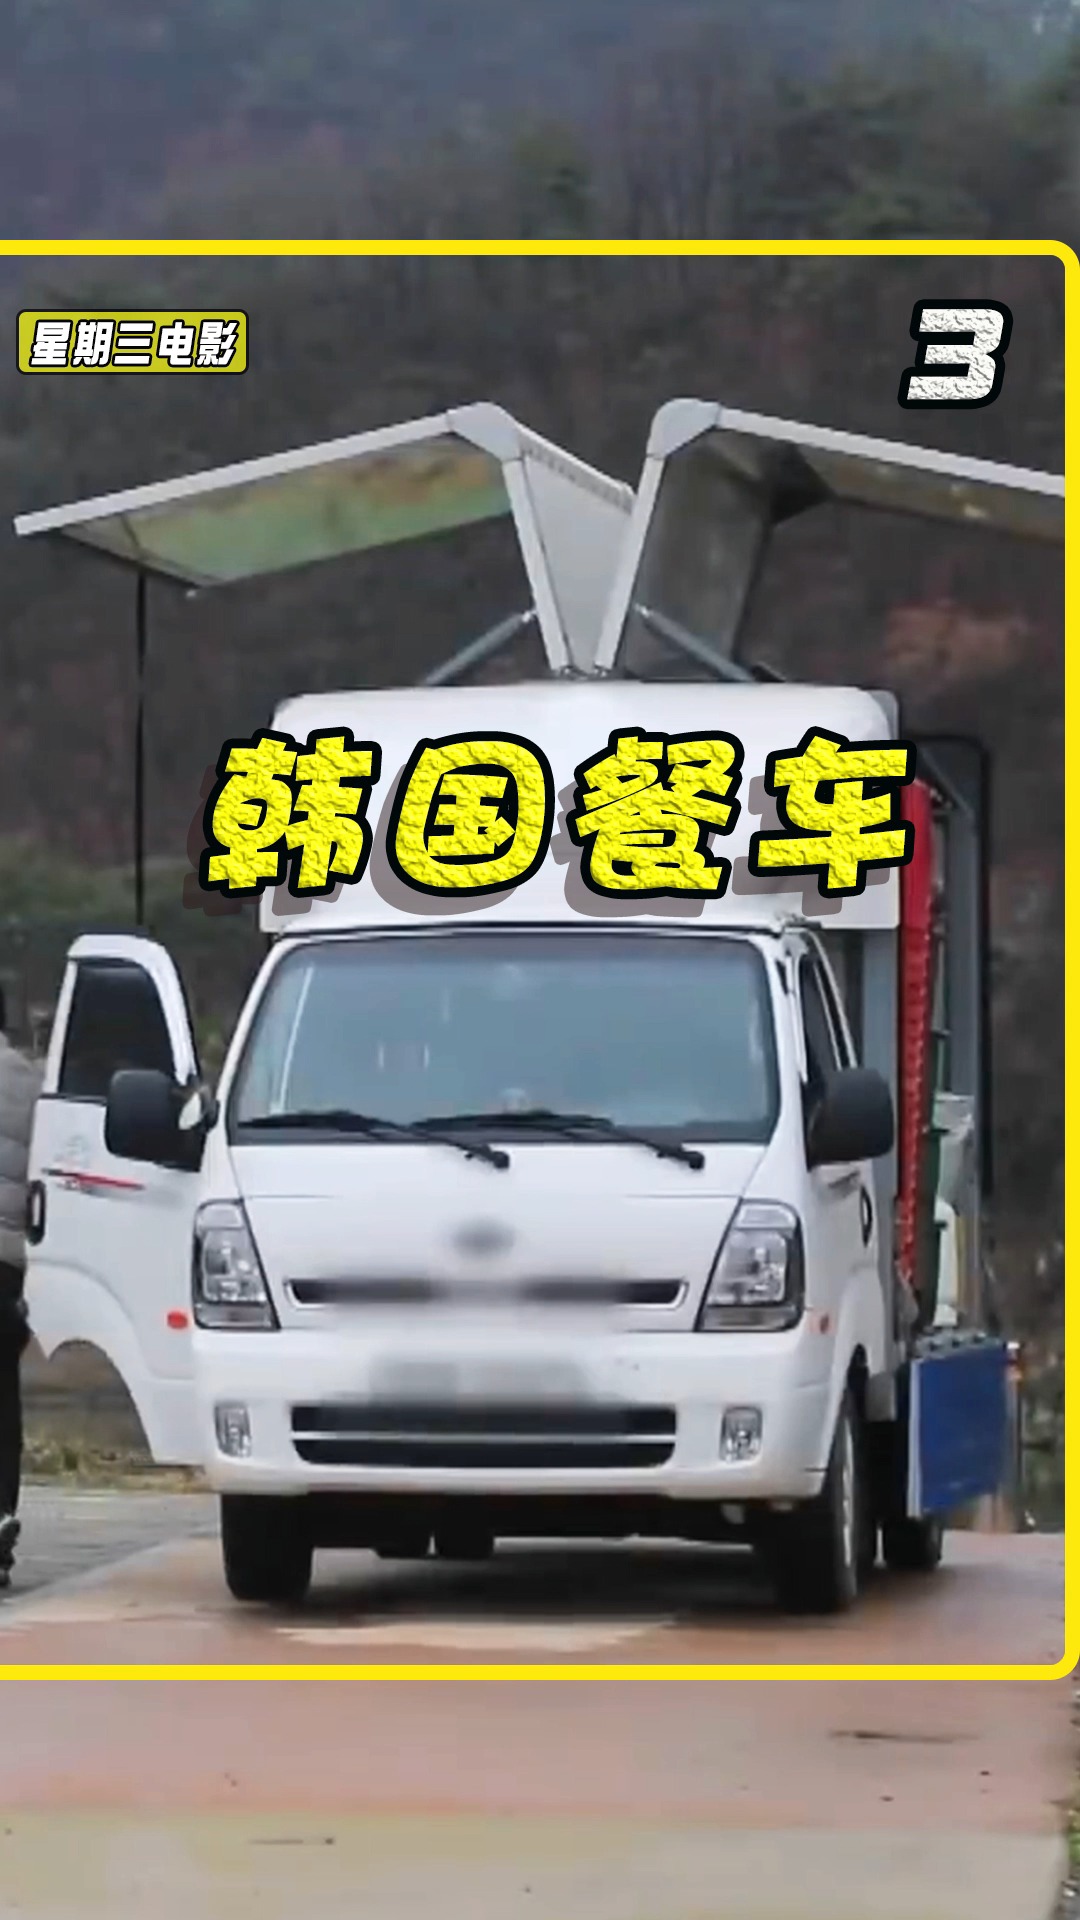 餐车#韩国的移动厨房,专门接团餐的餐车,挣的钱多但也很辛苦